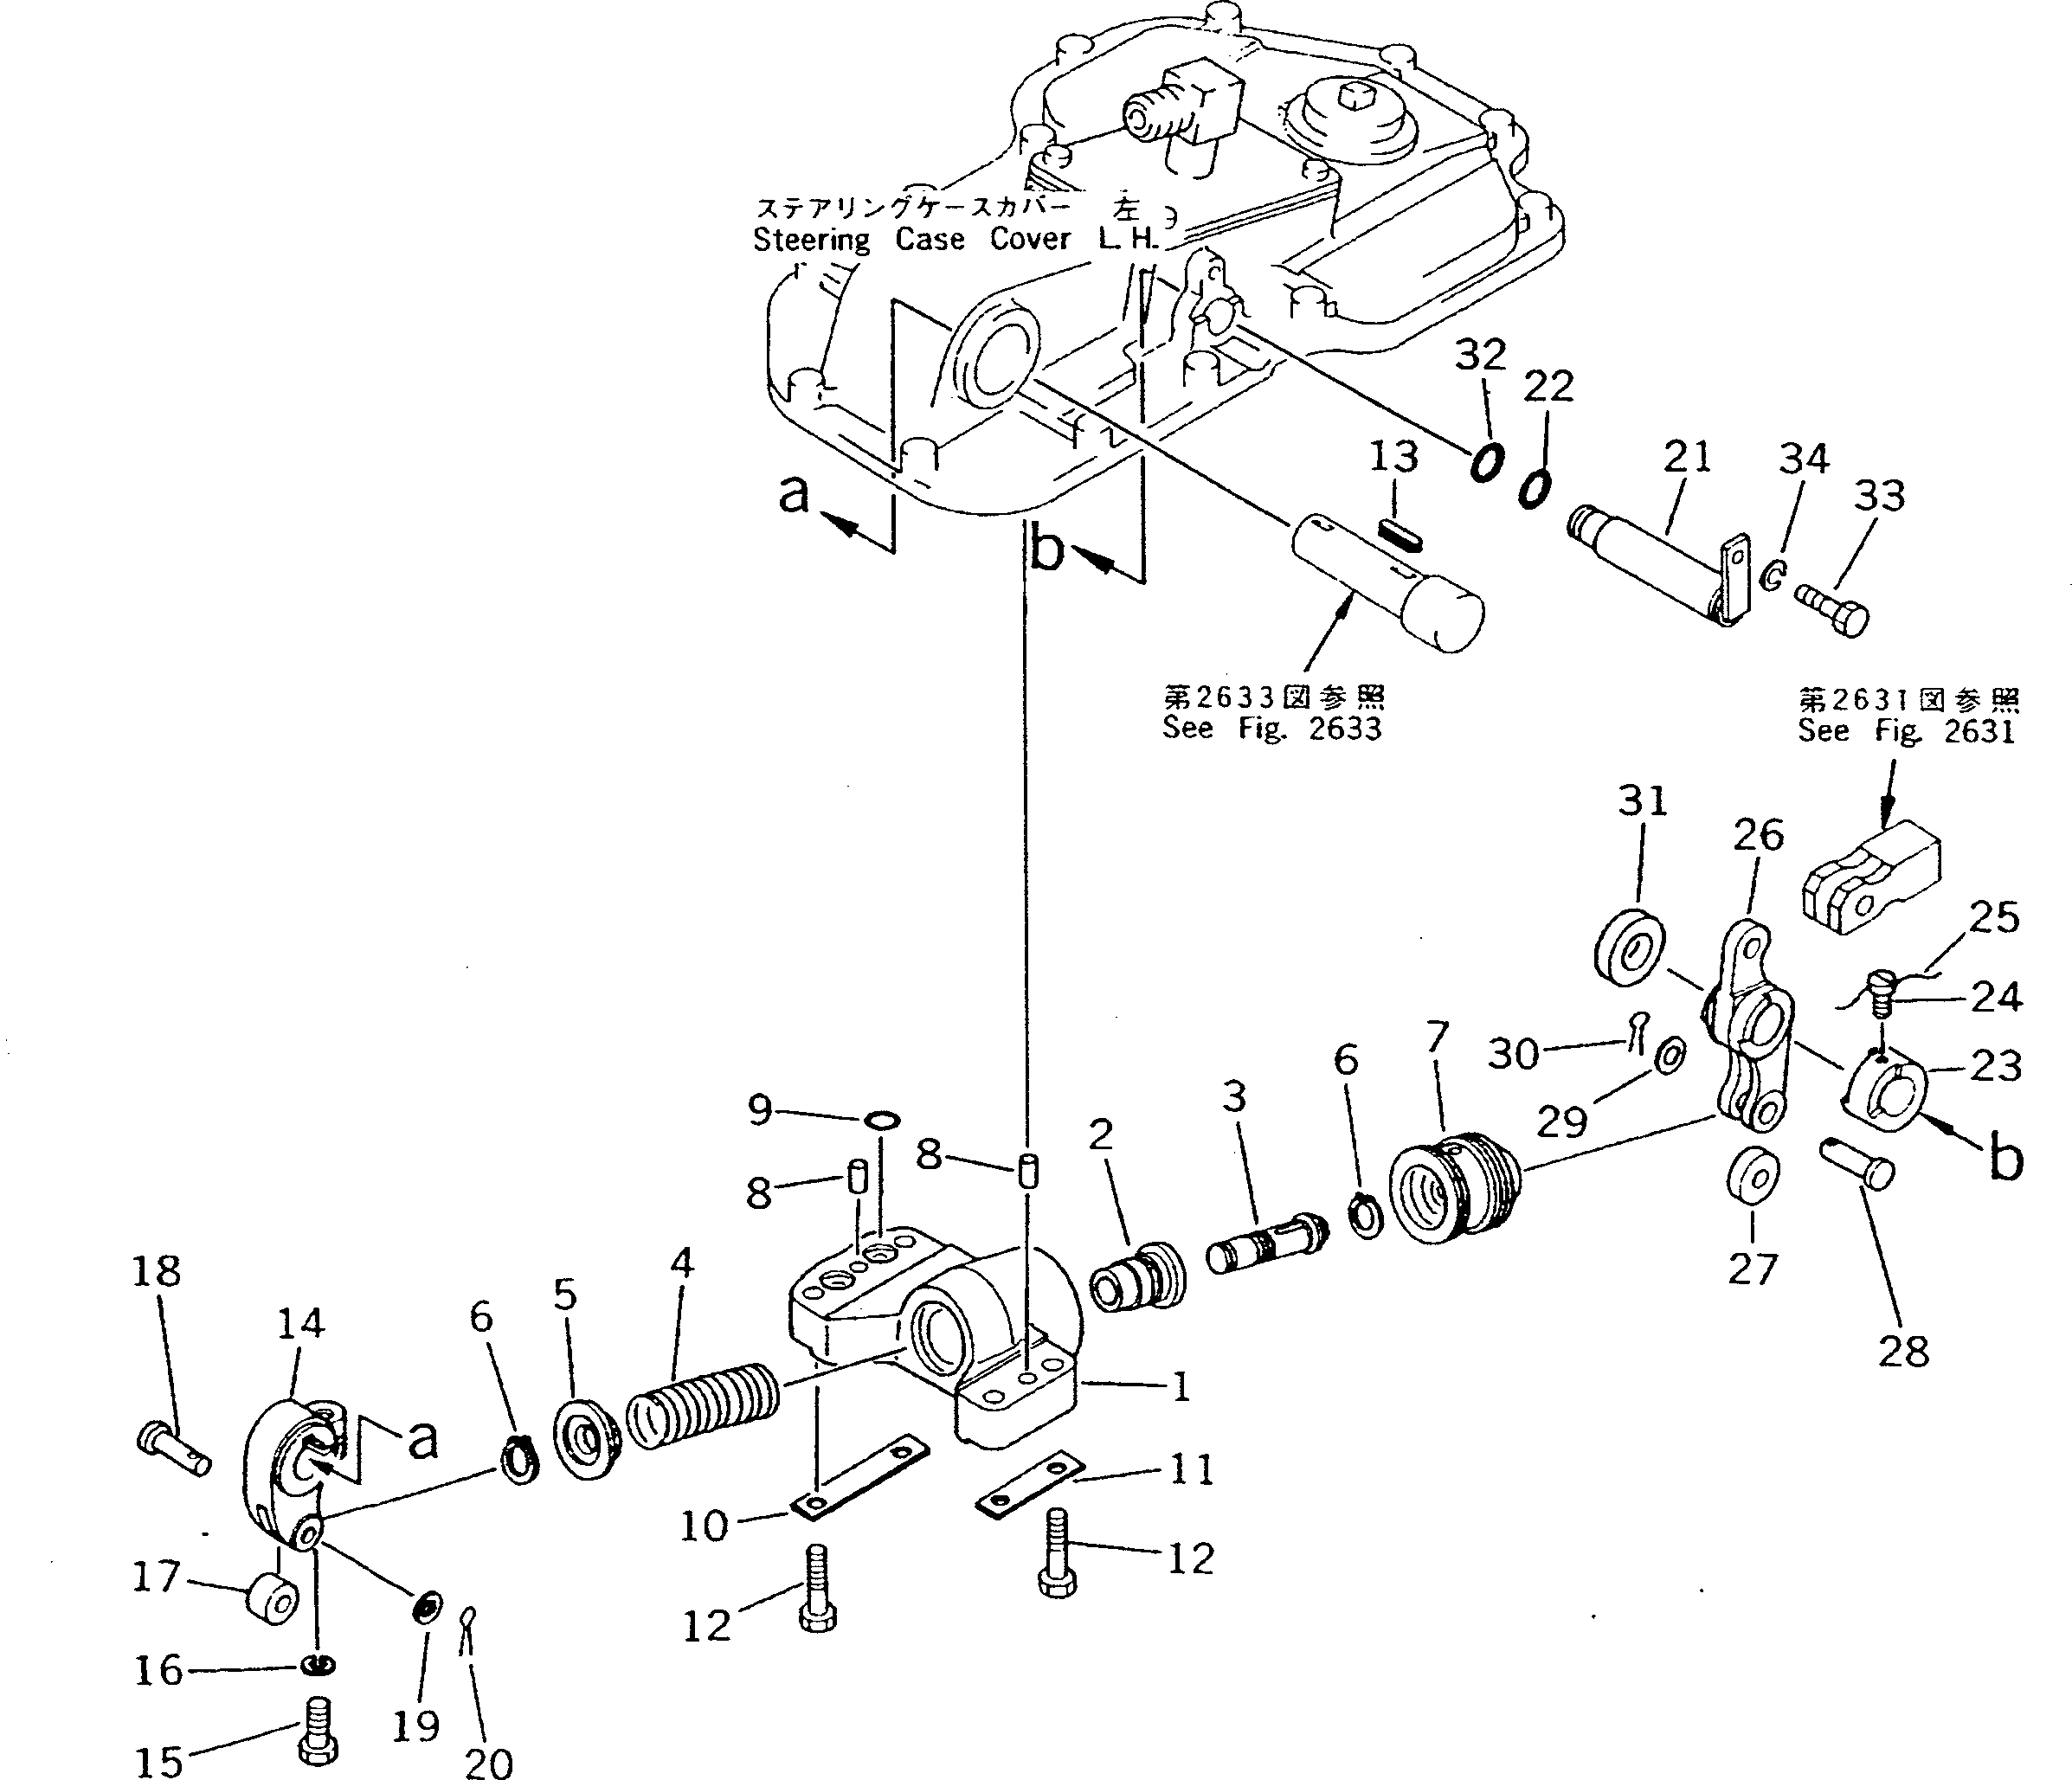 210. BRAKE BOOSTER [2635] - Komatsu part D135A-1 S/N 10001-UP [d135a-1c]